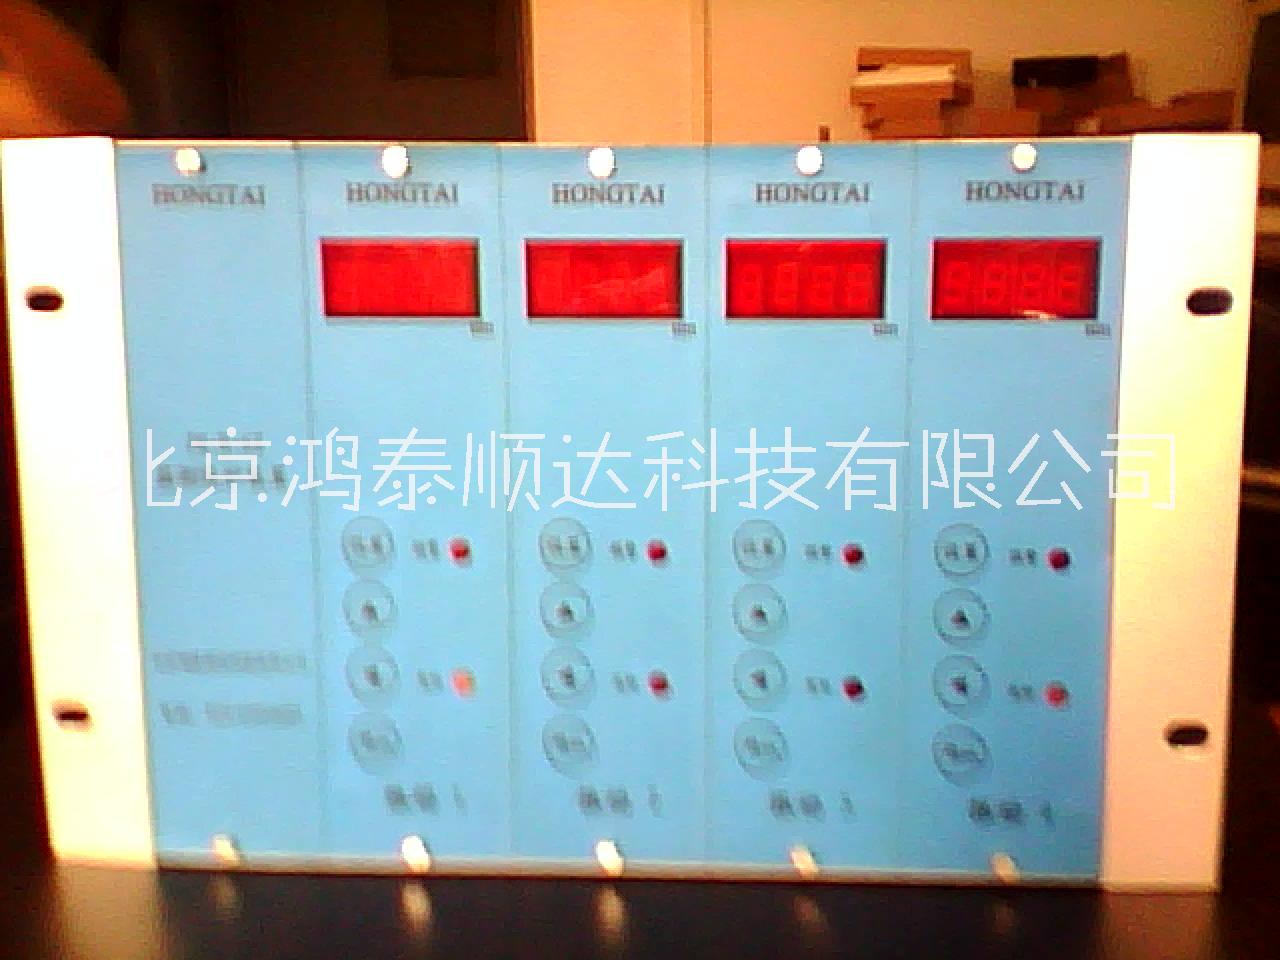 北京鸿泰顺达长期供应HTJM-B-6E在线振动监测及故障分析系统；HTJM-B-6E在线振动监测及故障分析系统市场价格|